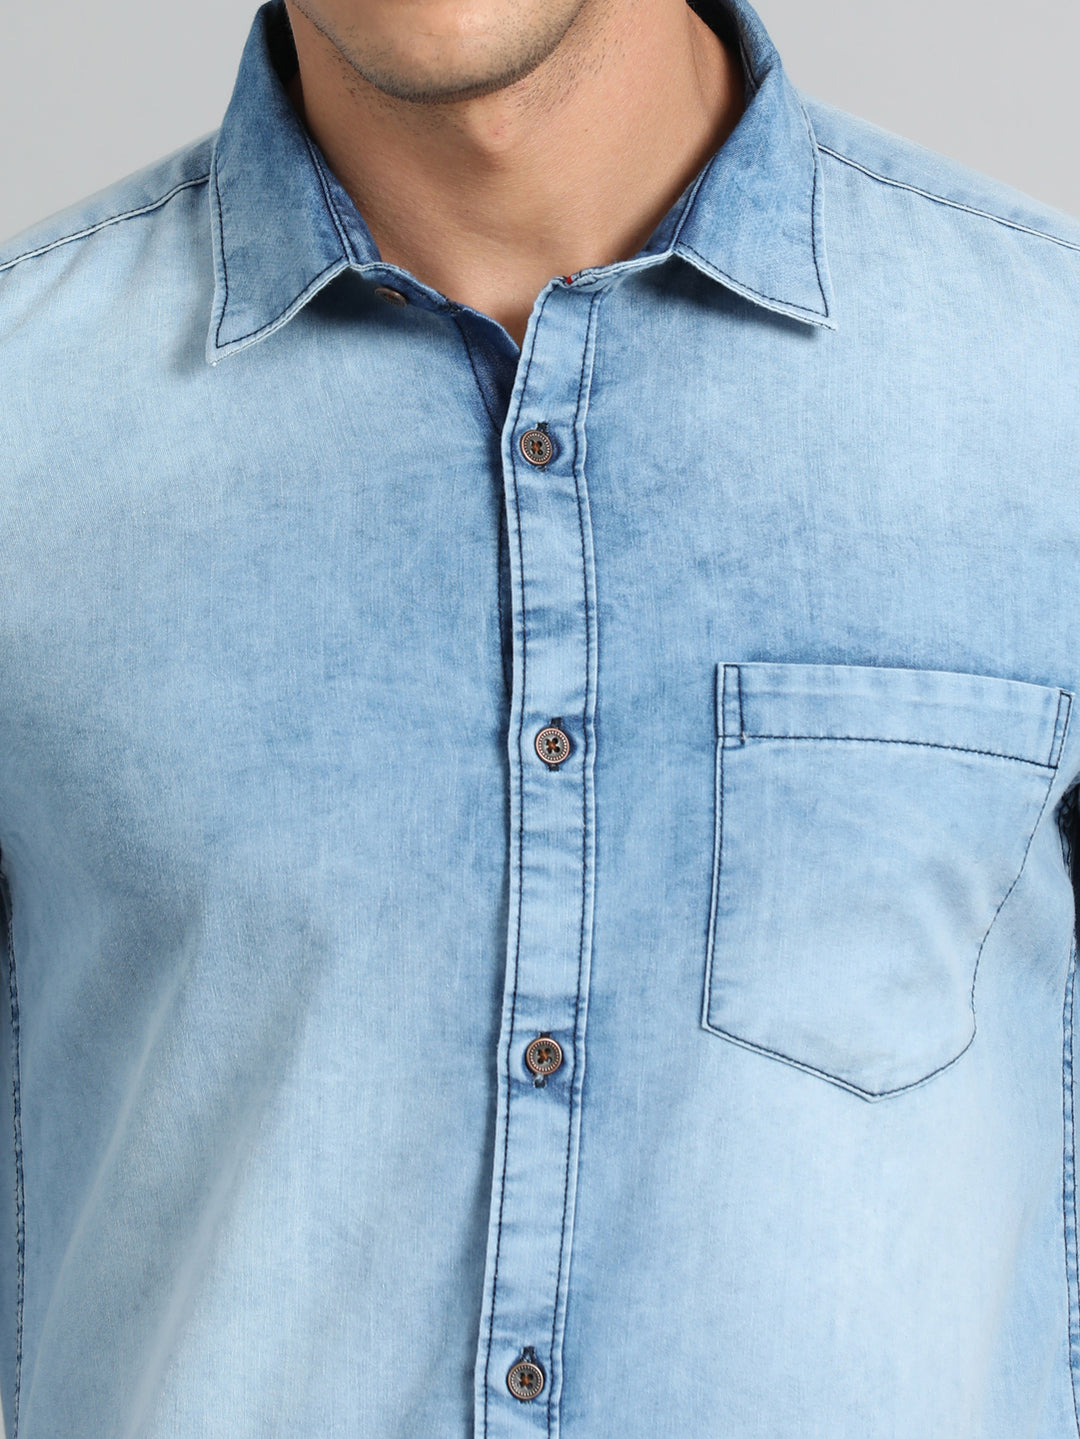 Slate Blue Denim Shirt Solid Shirt Bushirt   